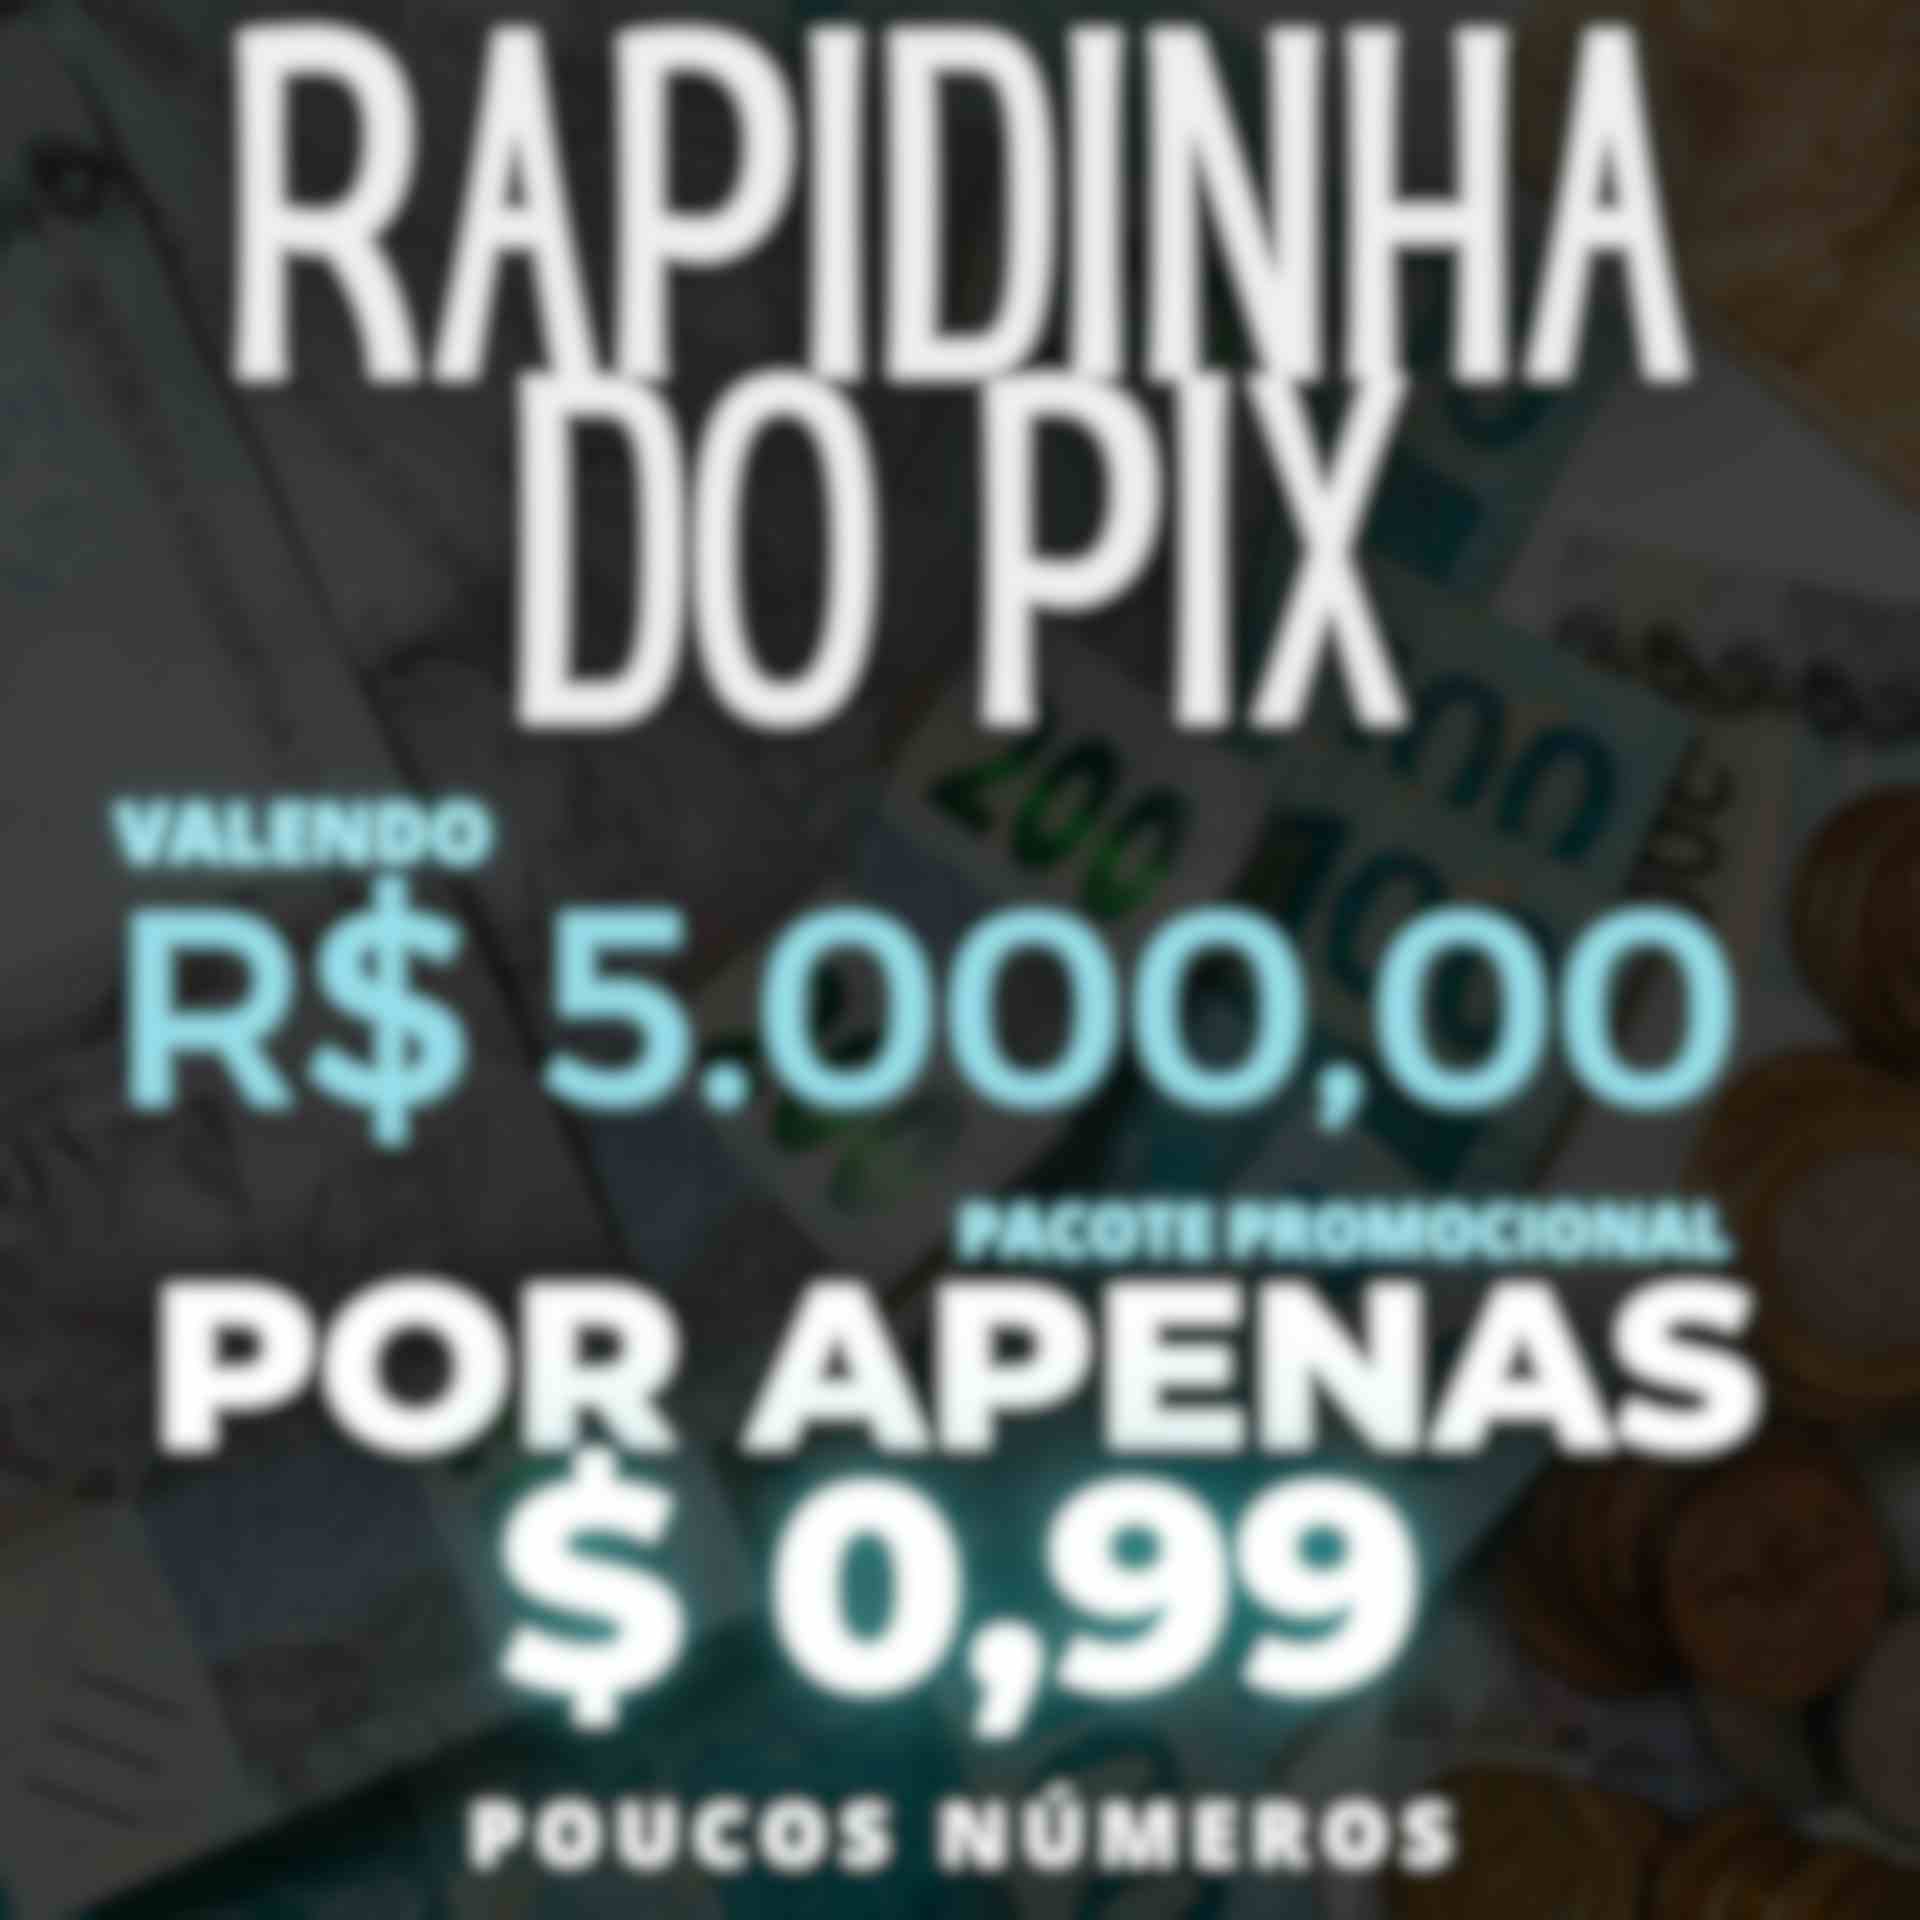 RAPIDINHA DO PIX VALENDO R$5.000,00